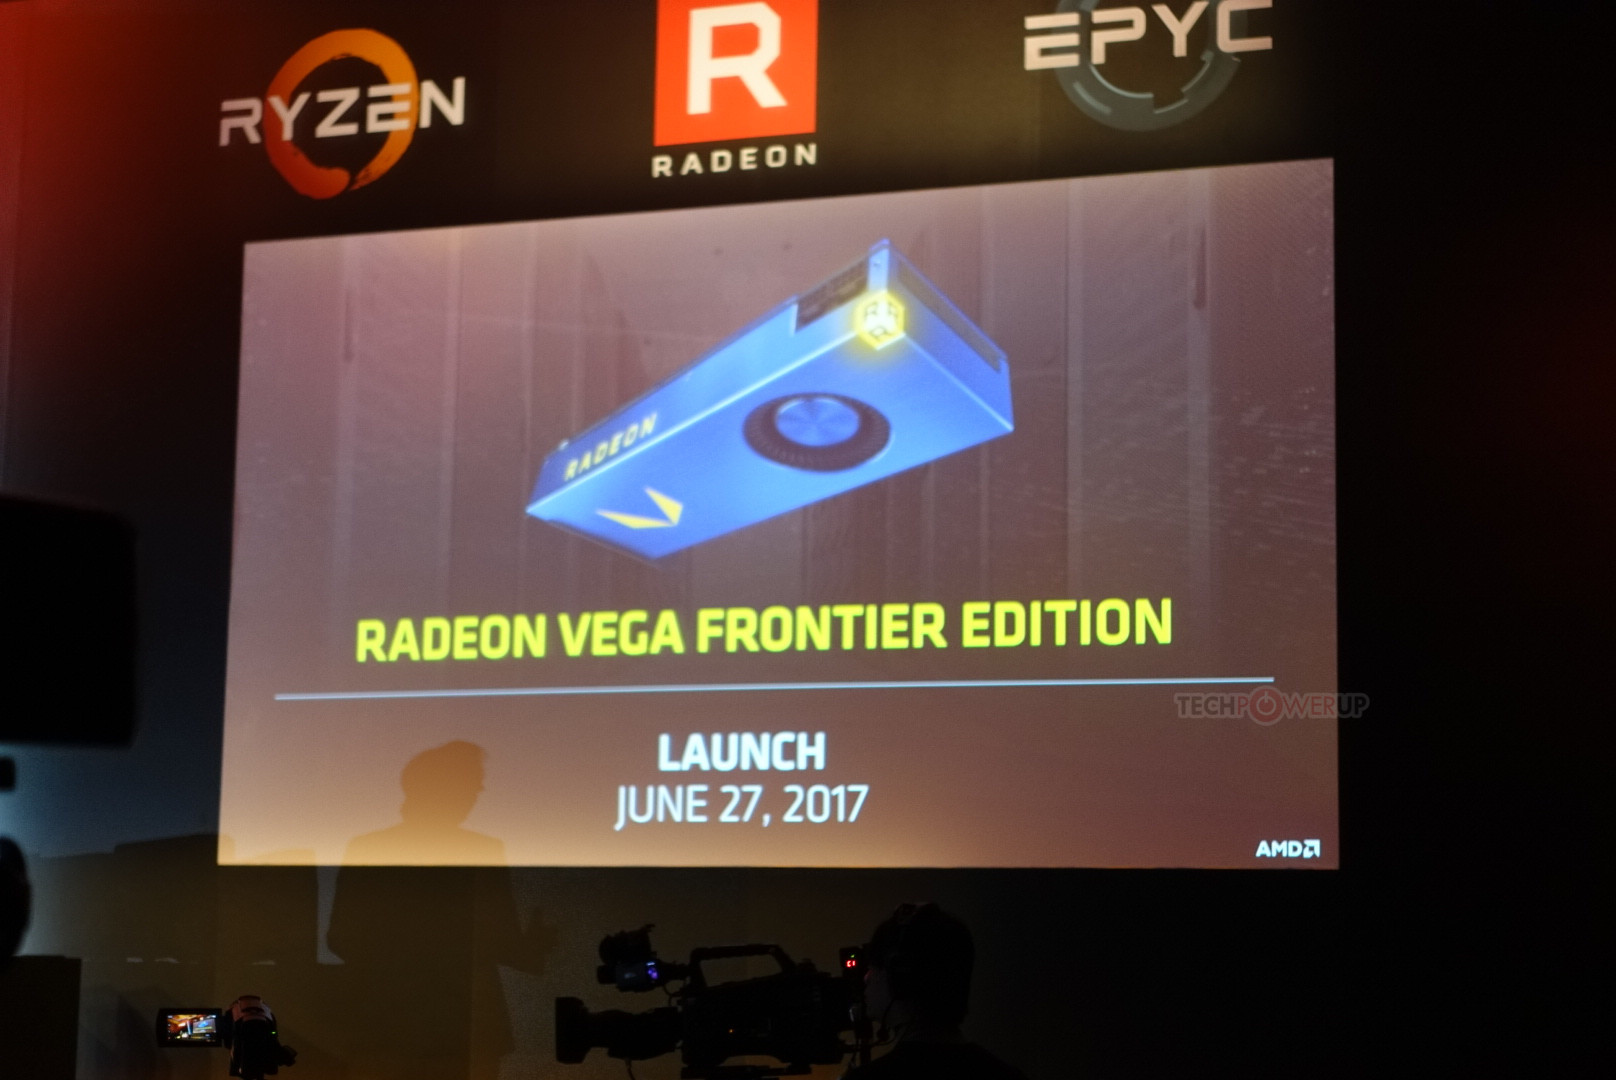 Игровая видеокарта AMD Radeon RX Vega выйдет в конце июля, профессиональная Radeon Vega Frontier Edition – на месяц раньше